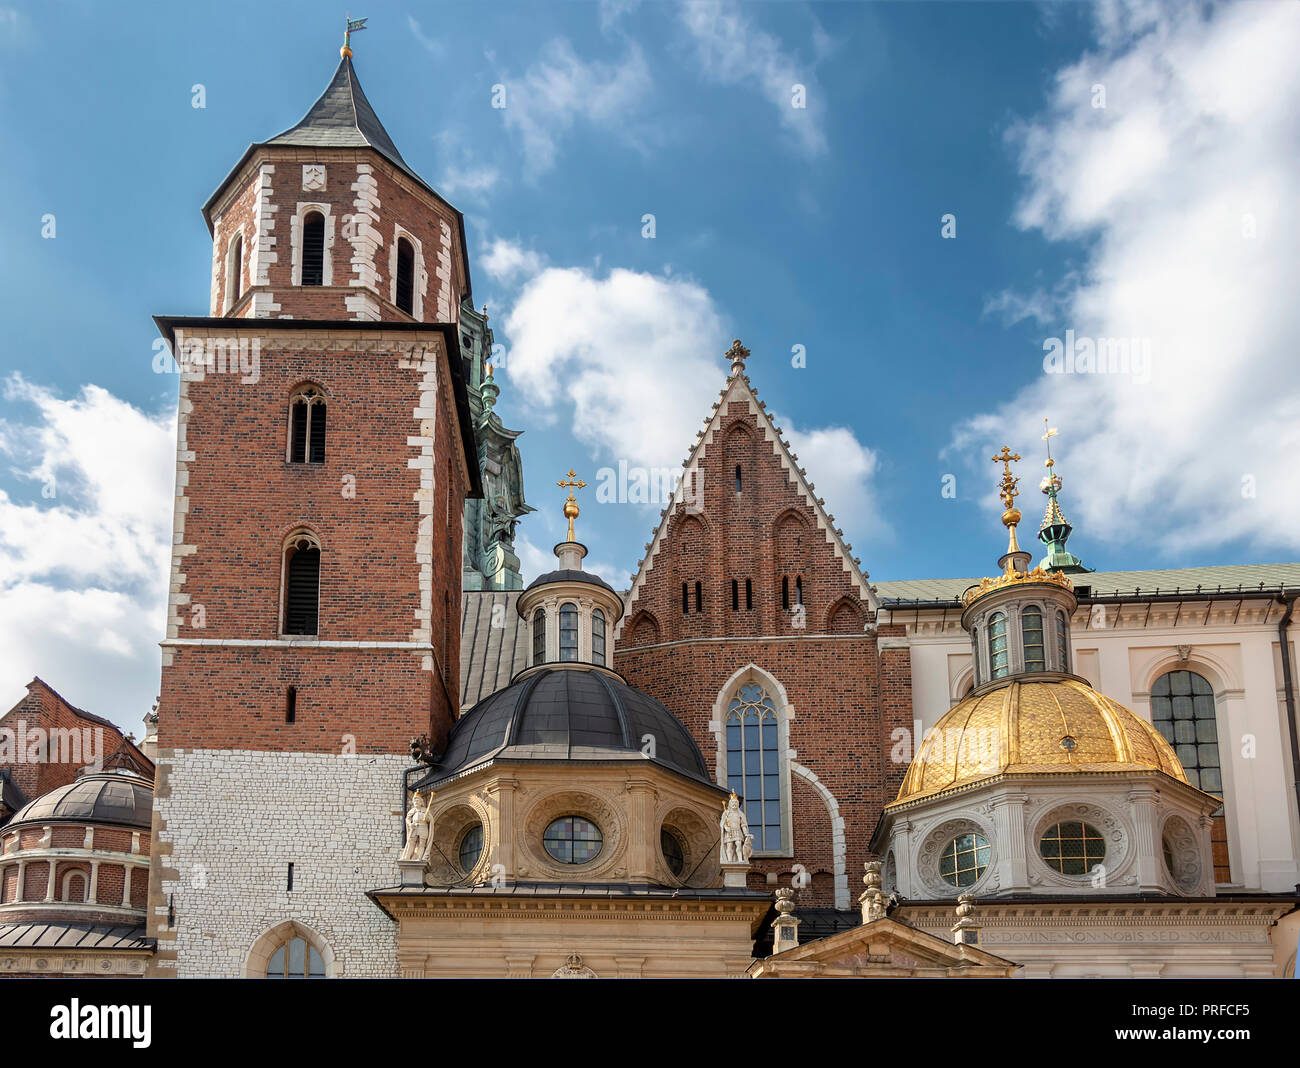 Detalle de las cúpulas de la Catedral de San Estanislao y san Wenceslao y el castillo real en la colina de Wawel al atardecer, Cracovia, Polonia. Foto de stock